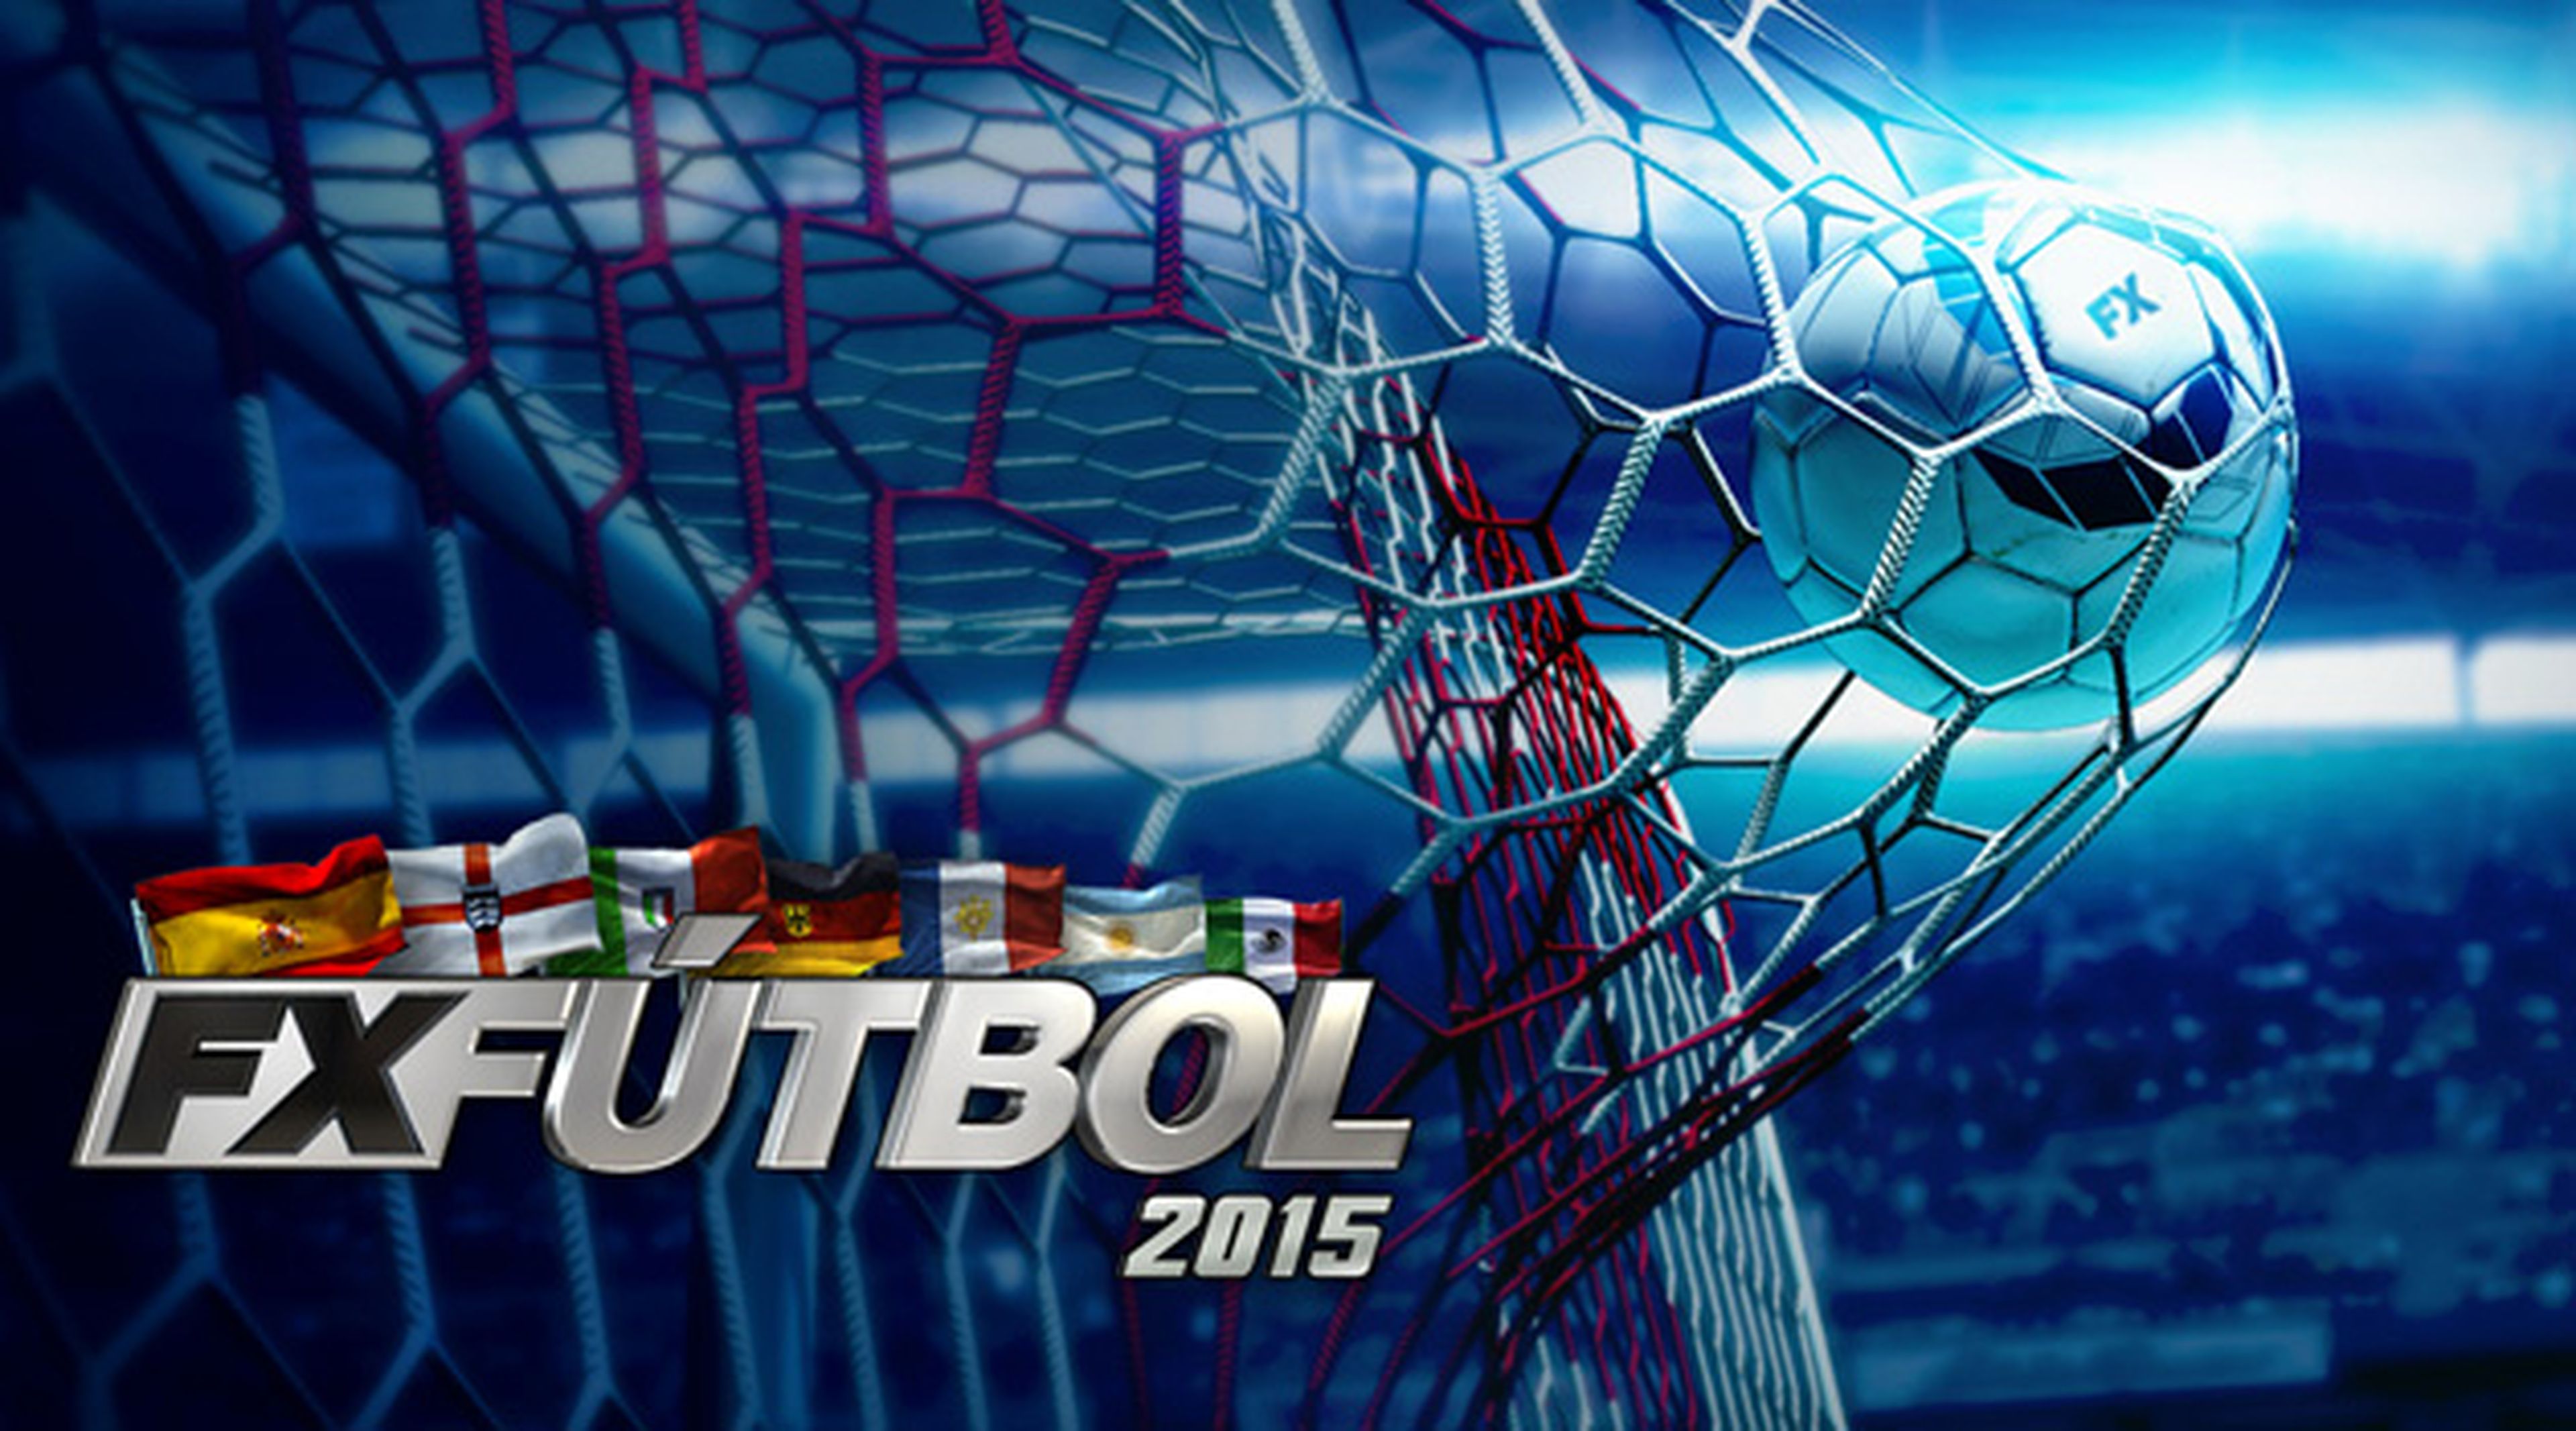 FX Futbol 2015 ya disponible... ¡y con 20 euros de regalo!